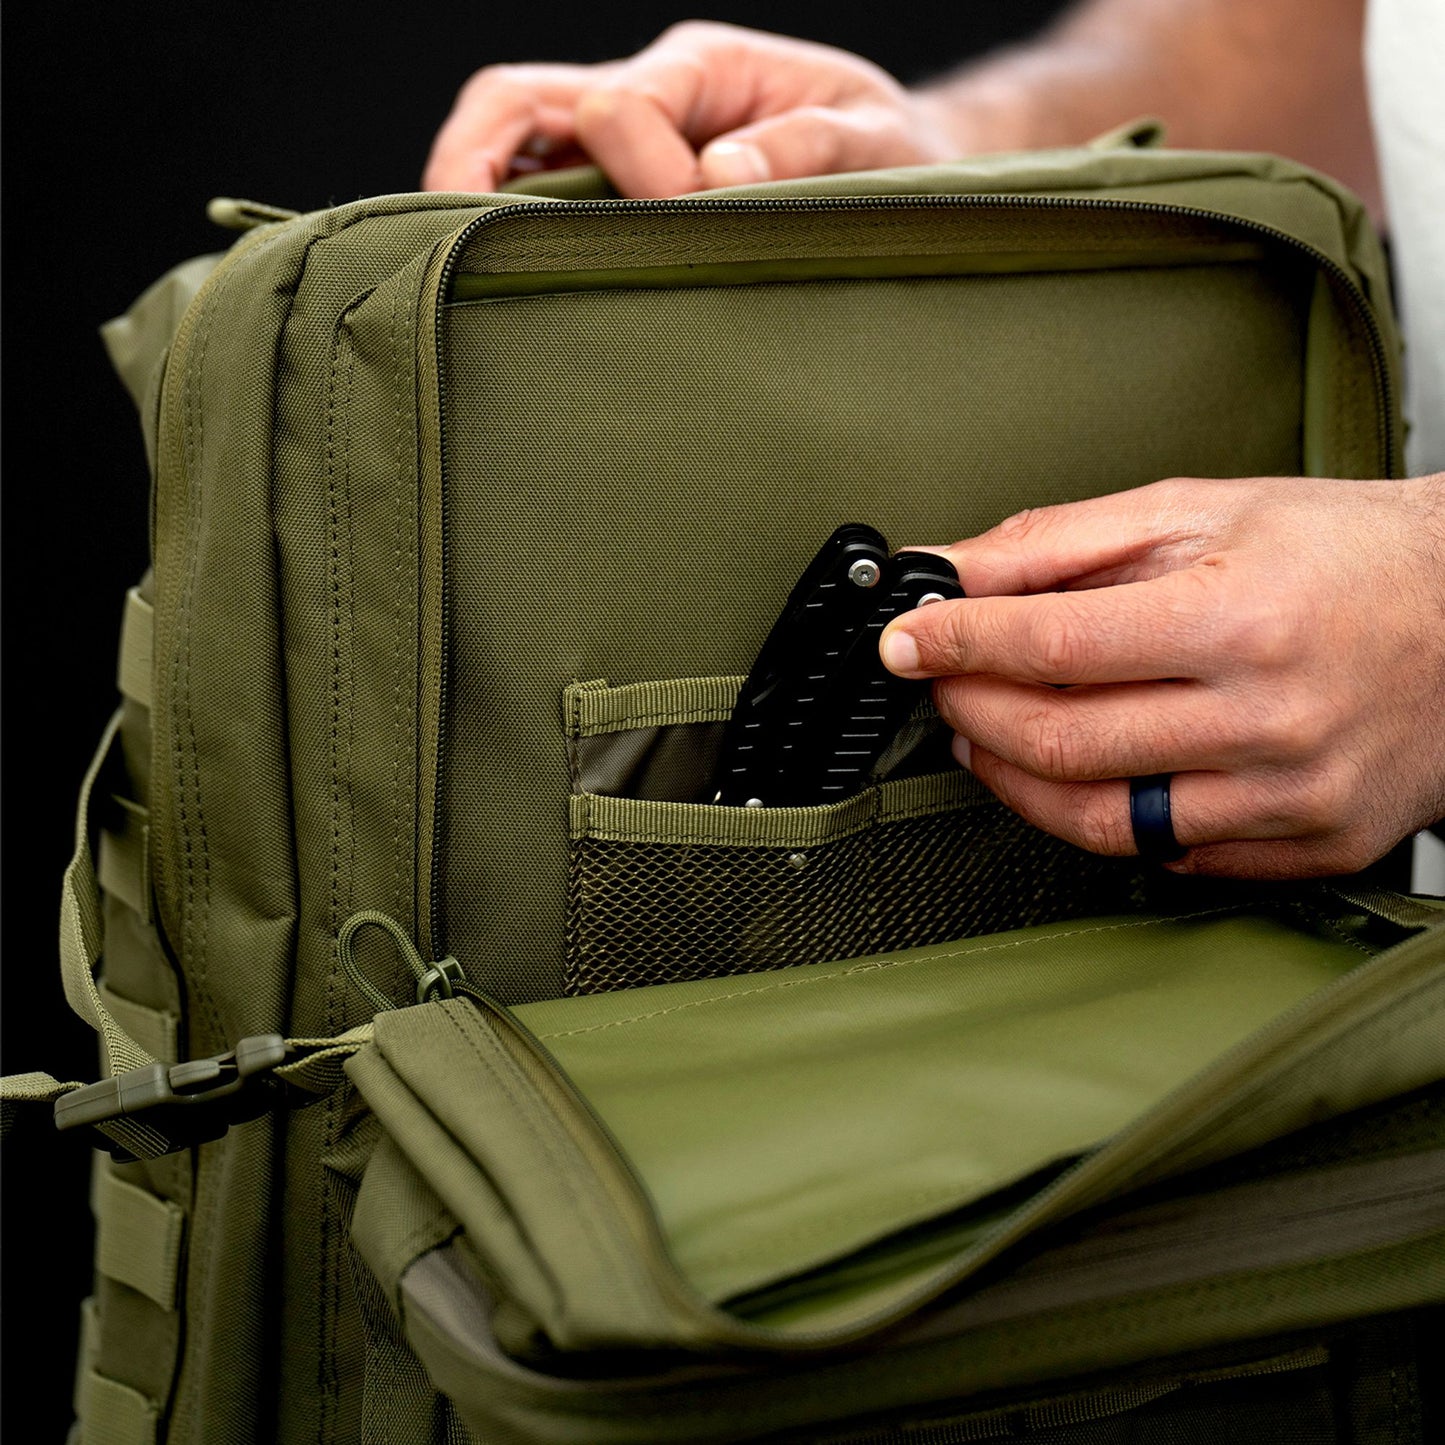 Green 40L tactical backpack inside pocket